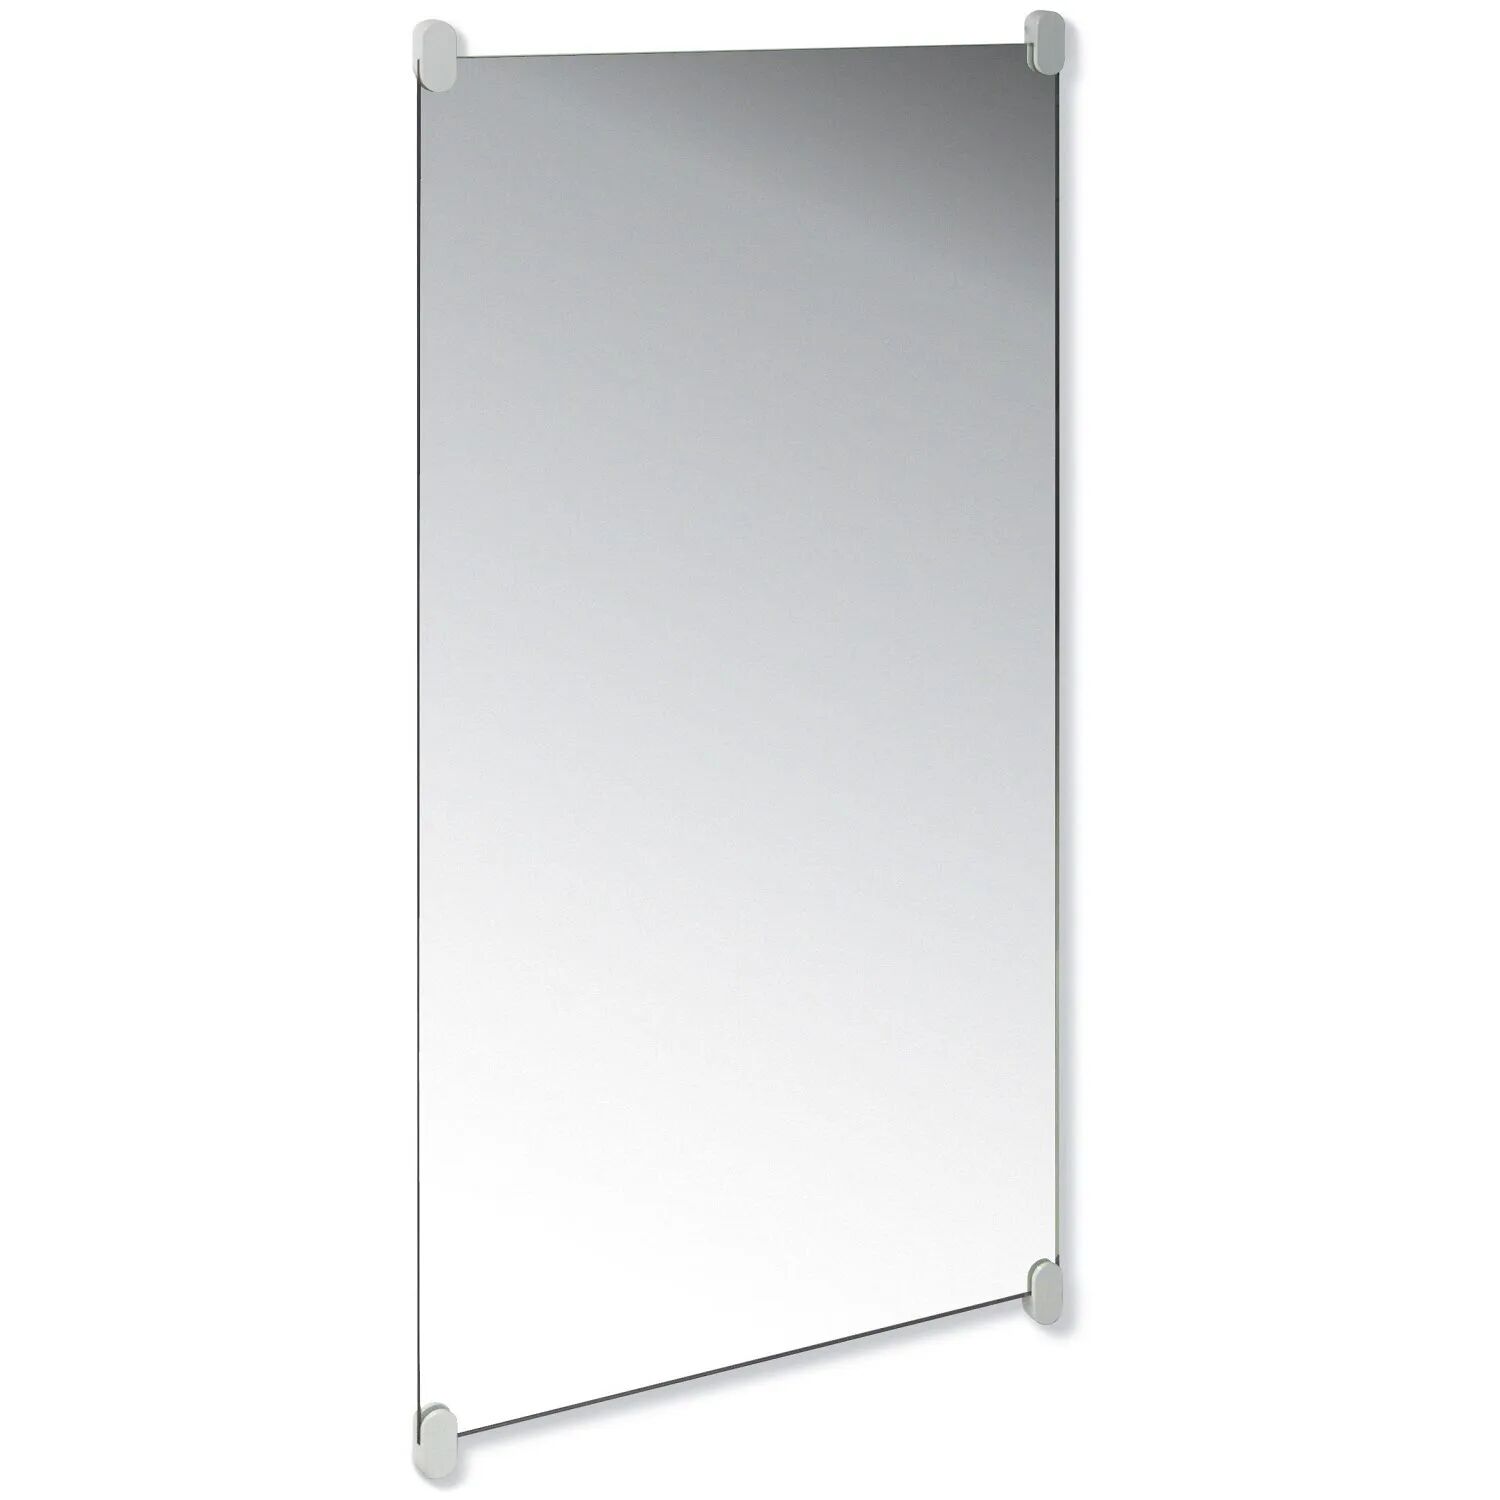 HEWI Spiegel Wandspiegel mit Haltern HEWI Spiegel B: 60 T: 0,6 H: 120, mit Spiegelhaltern 126 cm lichtgrau 801.01.300 97